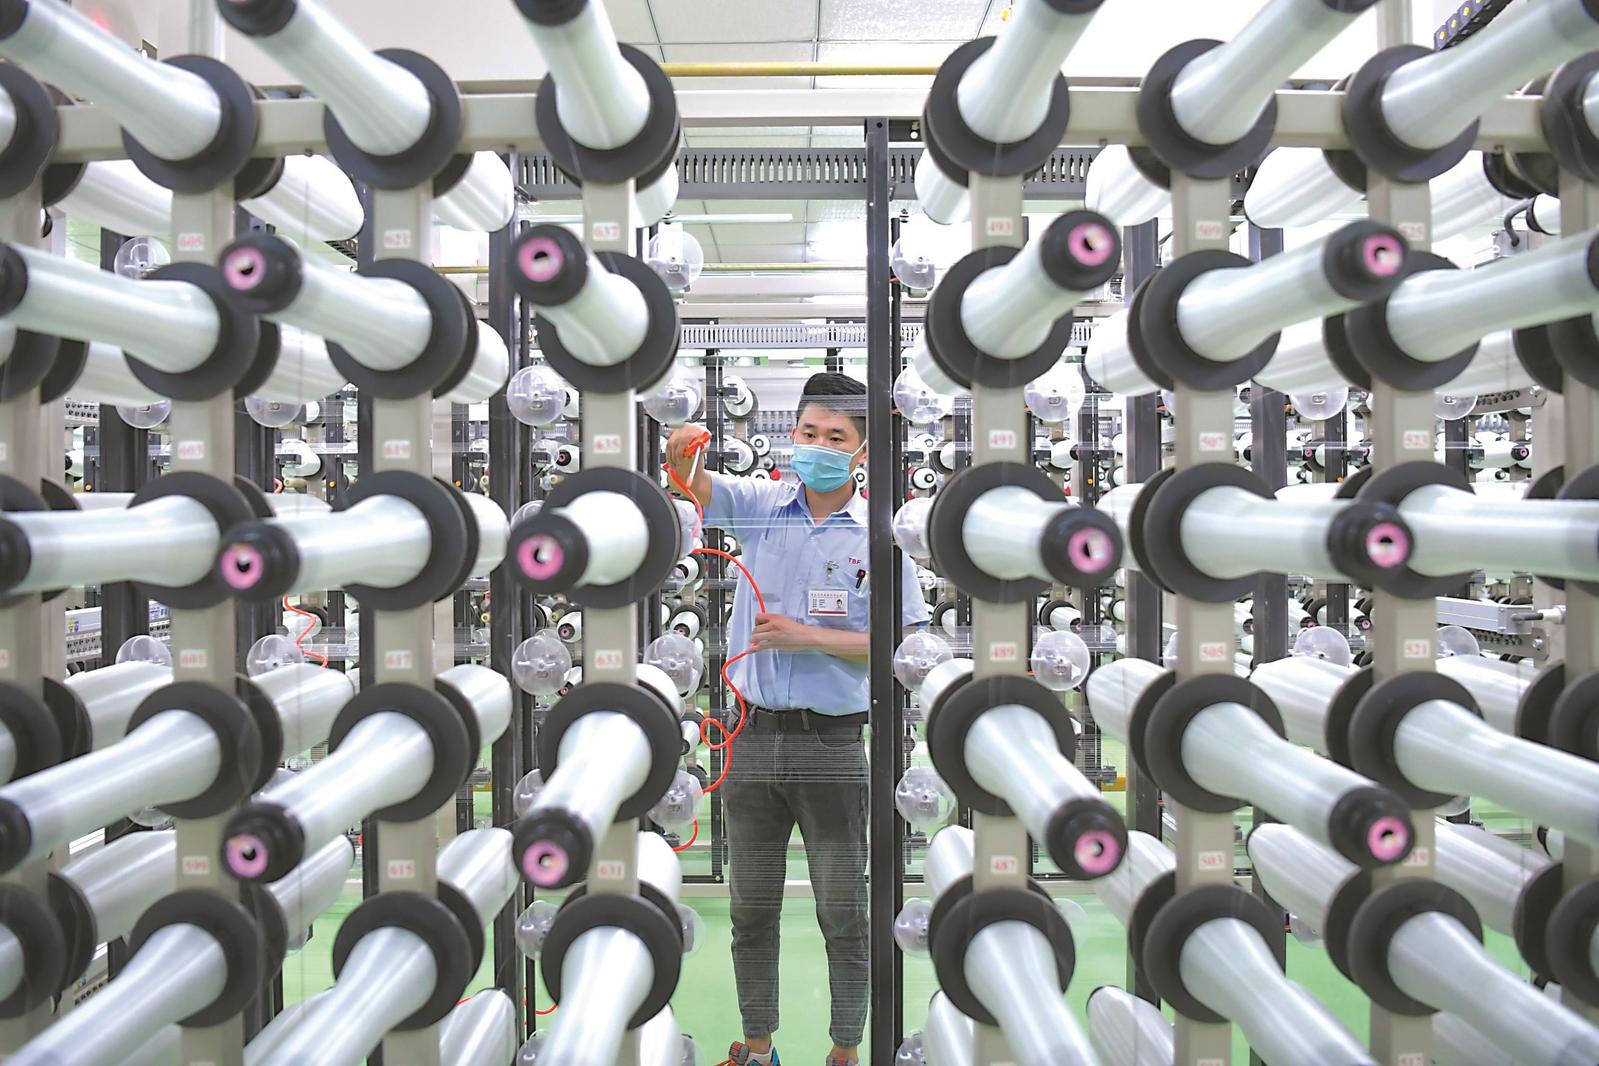 在安徽自贸区（蚌埠片区）台嘉玻璃纤维有限公司，300多台织布机自动生产玻璃纤维布。记者 程 兆 摄